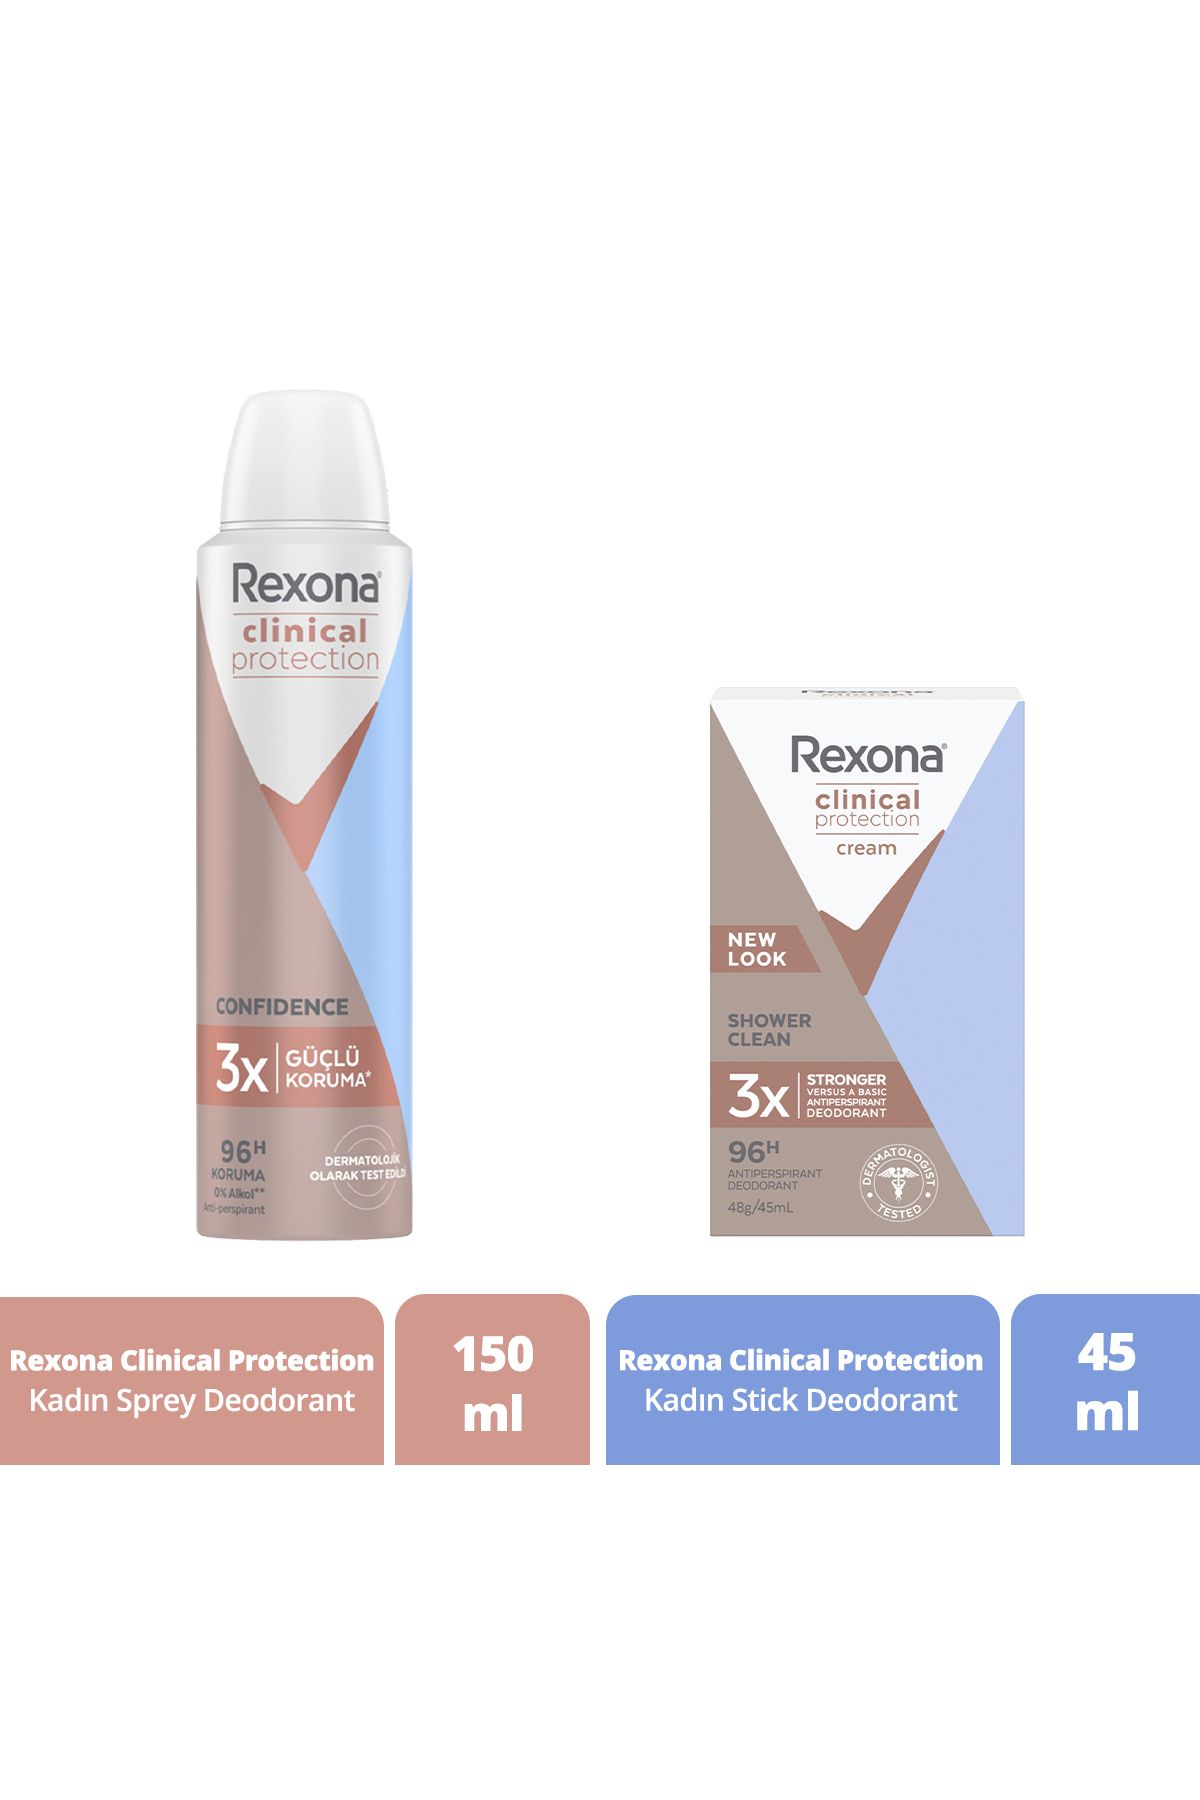 Rexona Clinical Protection Kadın Sprey Deodorant 150 ml Kadın Stick Deodorant 45 ml